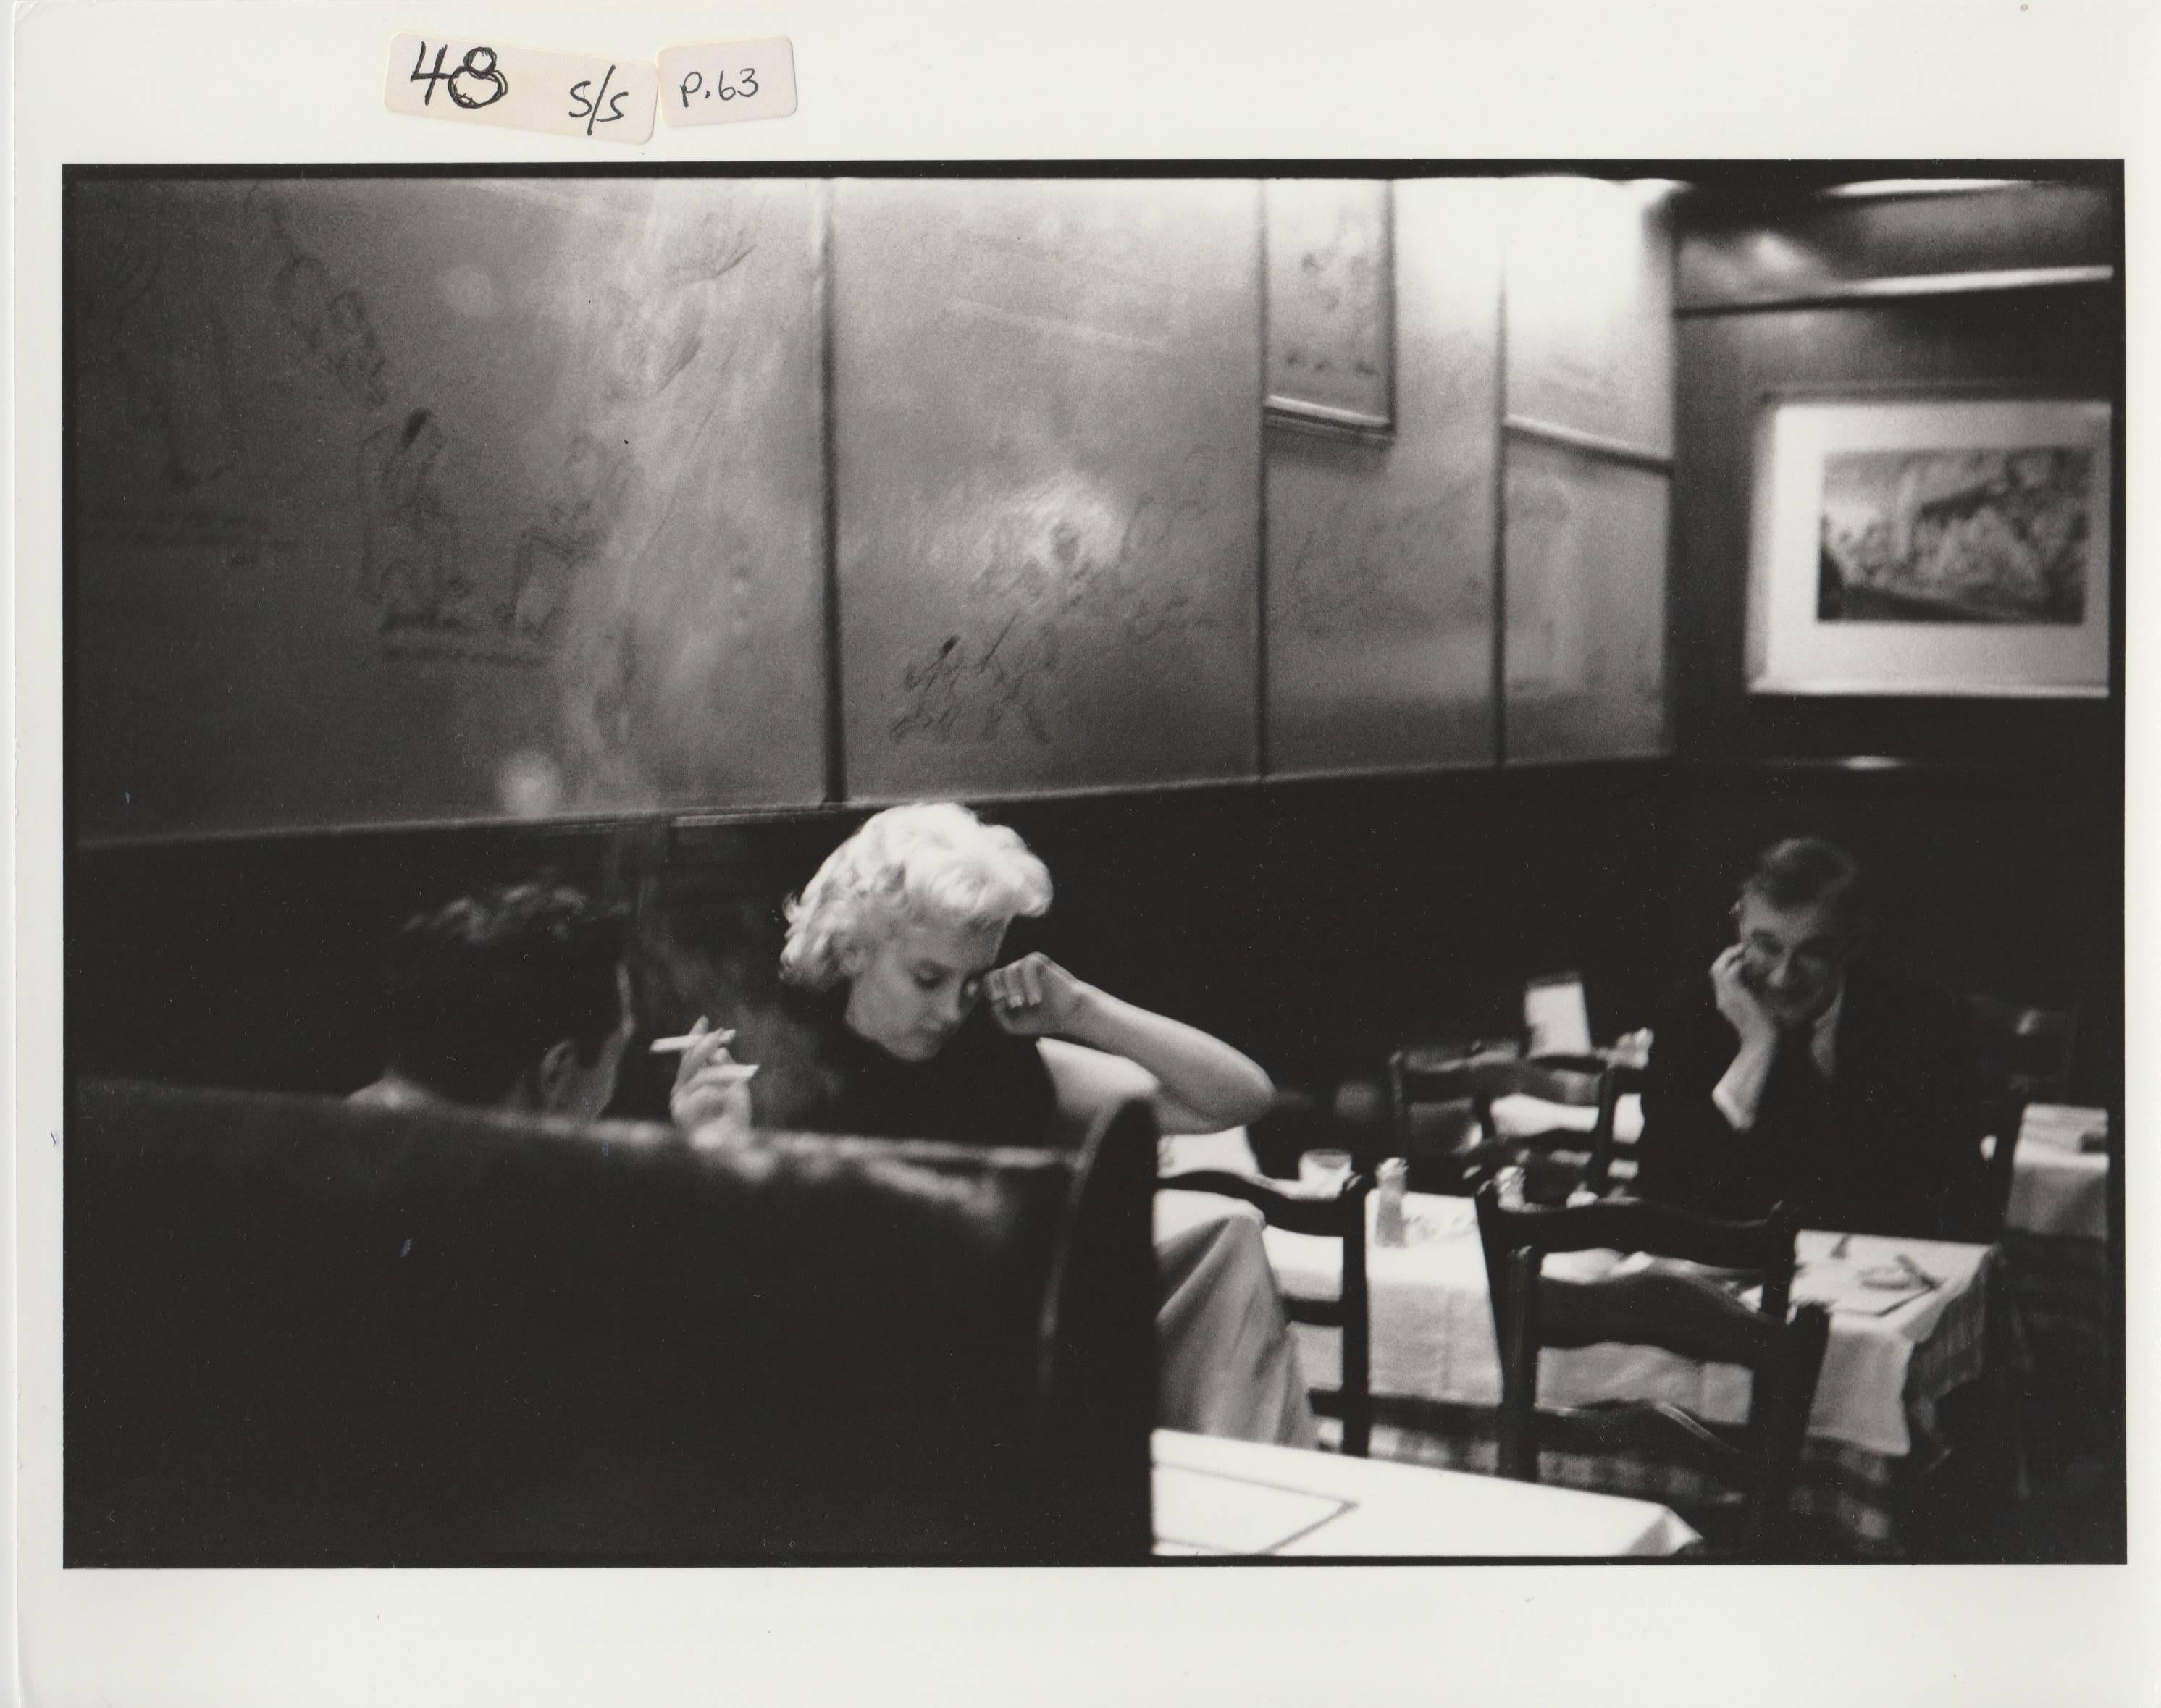 Edward Feingersh Black and White Photograph – Marilyn Monroe, einzigartiger Druck aus dem Jahr 1988 aus einem Originalnegativ